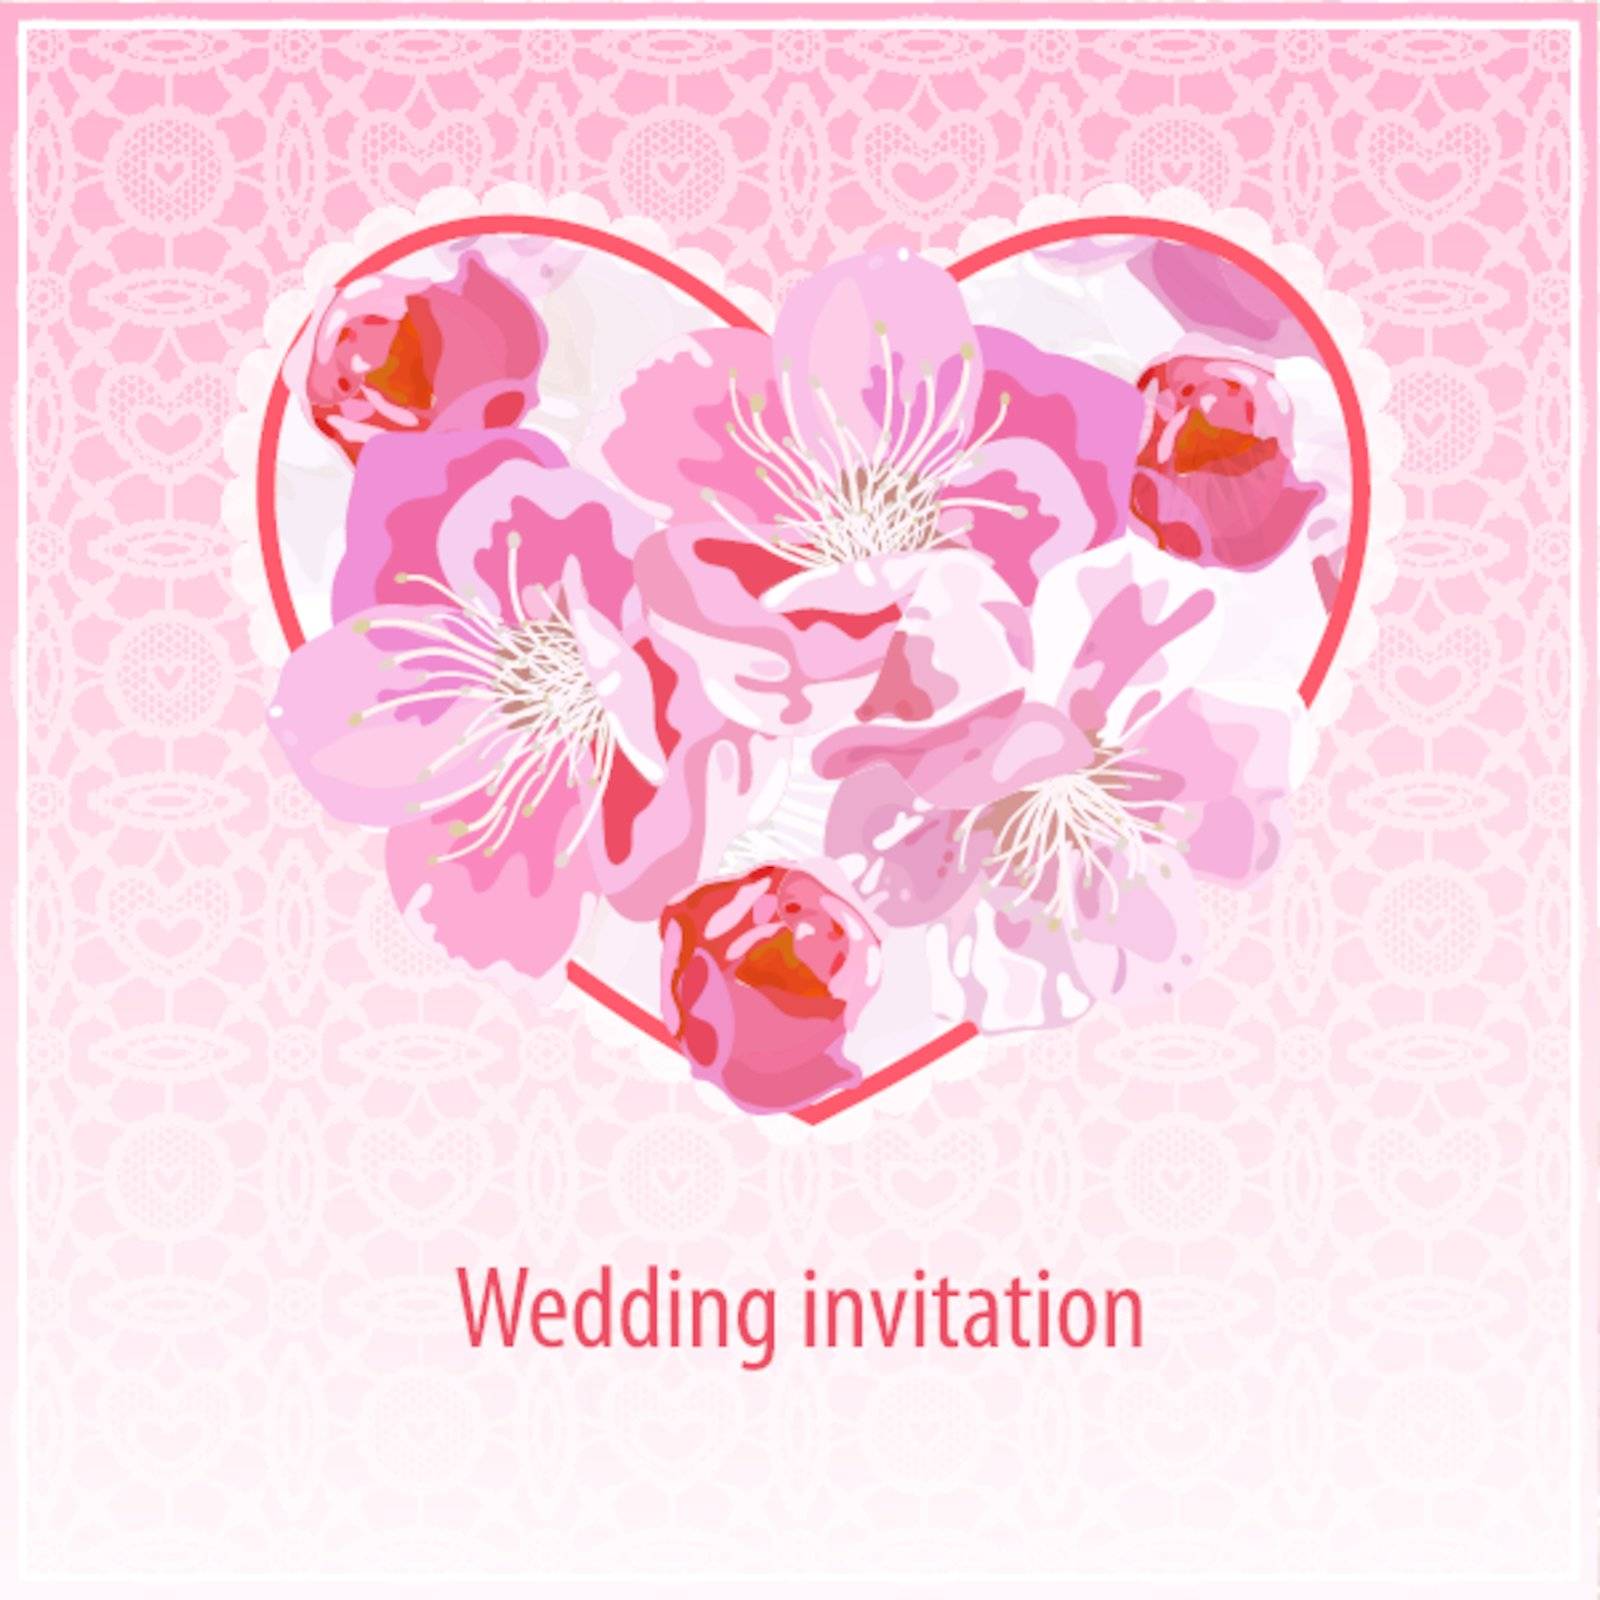 Invitation for wedding by evdakovka